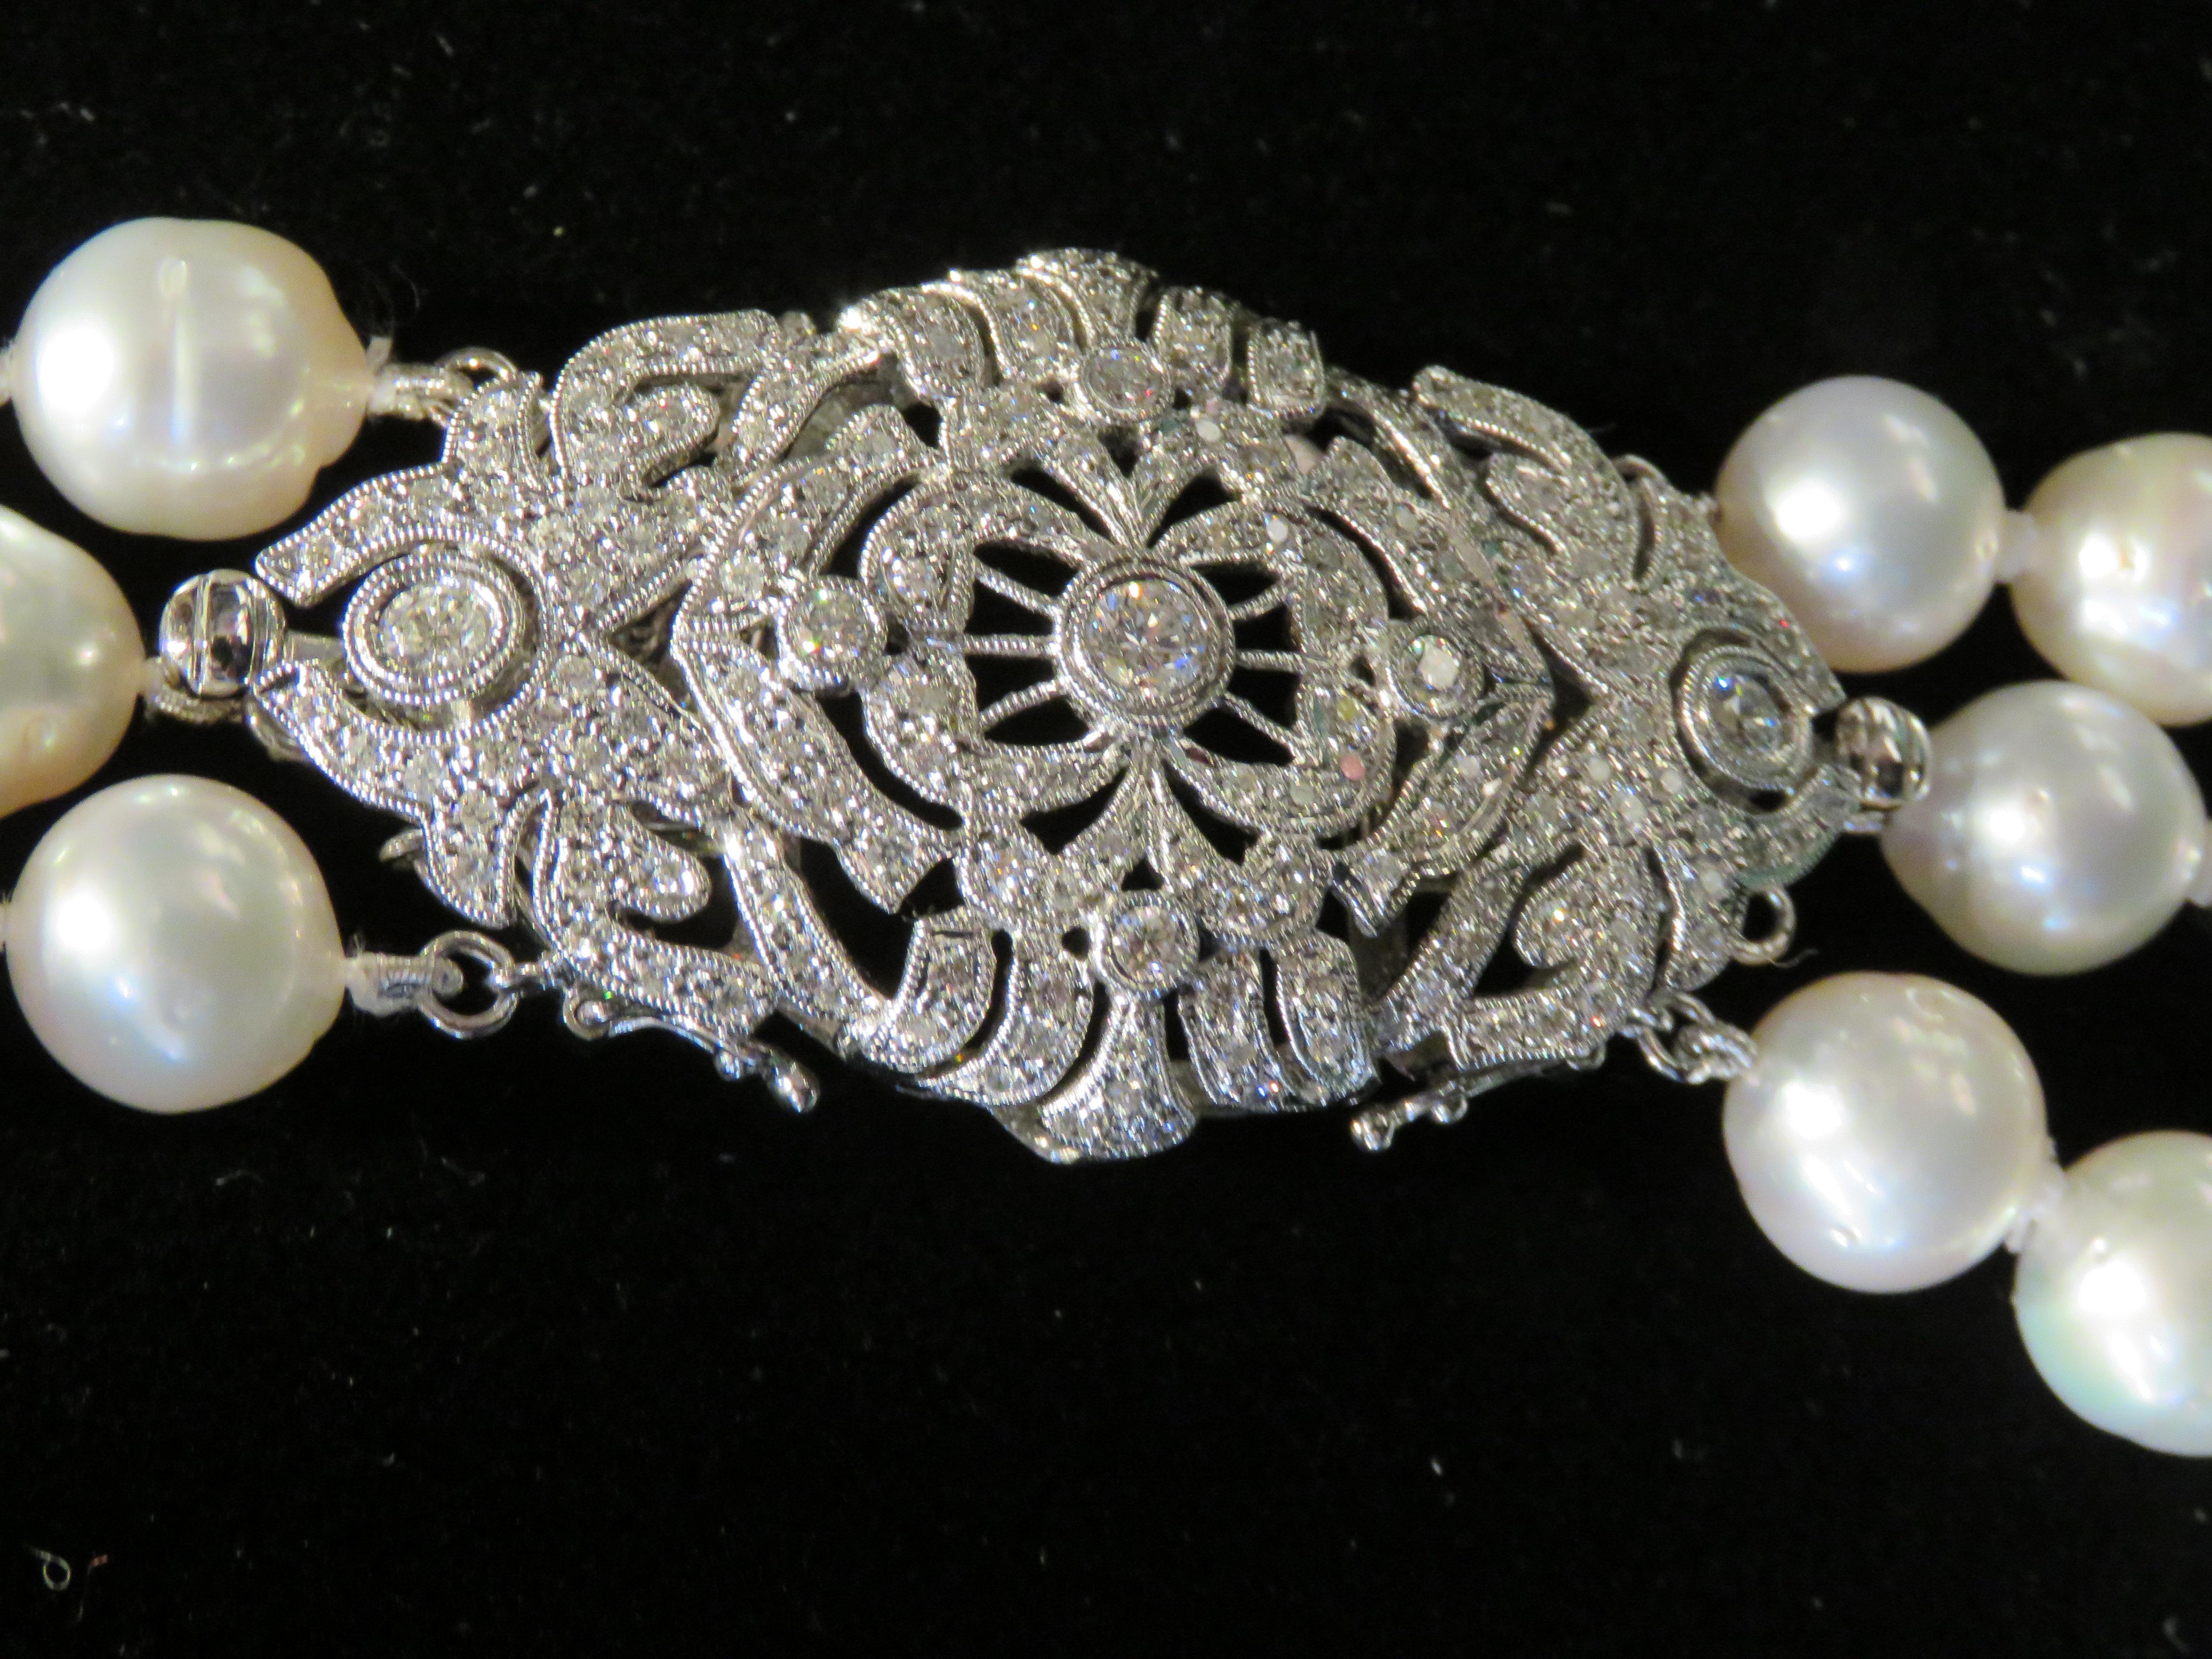 L'article suivant que nous vous proposons est ce magnifique Rare Important Collier en or blanc 18KT à trois rangs de perles baroques des mers du Sud et de diamants. Le Whiting est composé d'environ 144 magnifiques perles baroques blanches de la mer